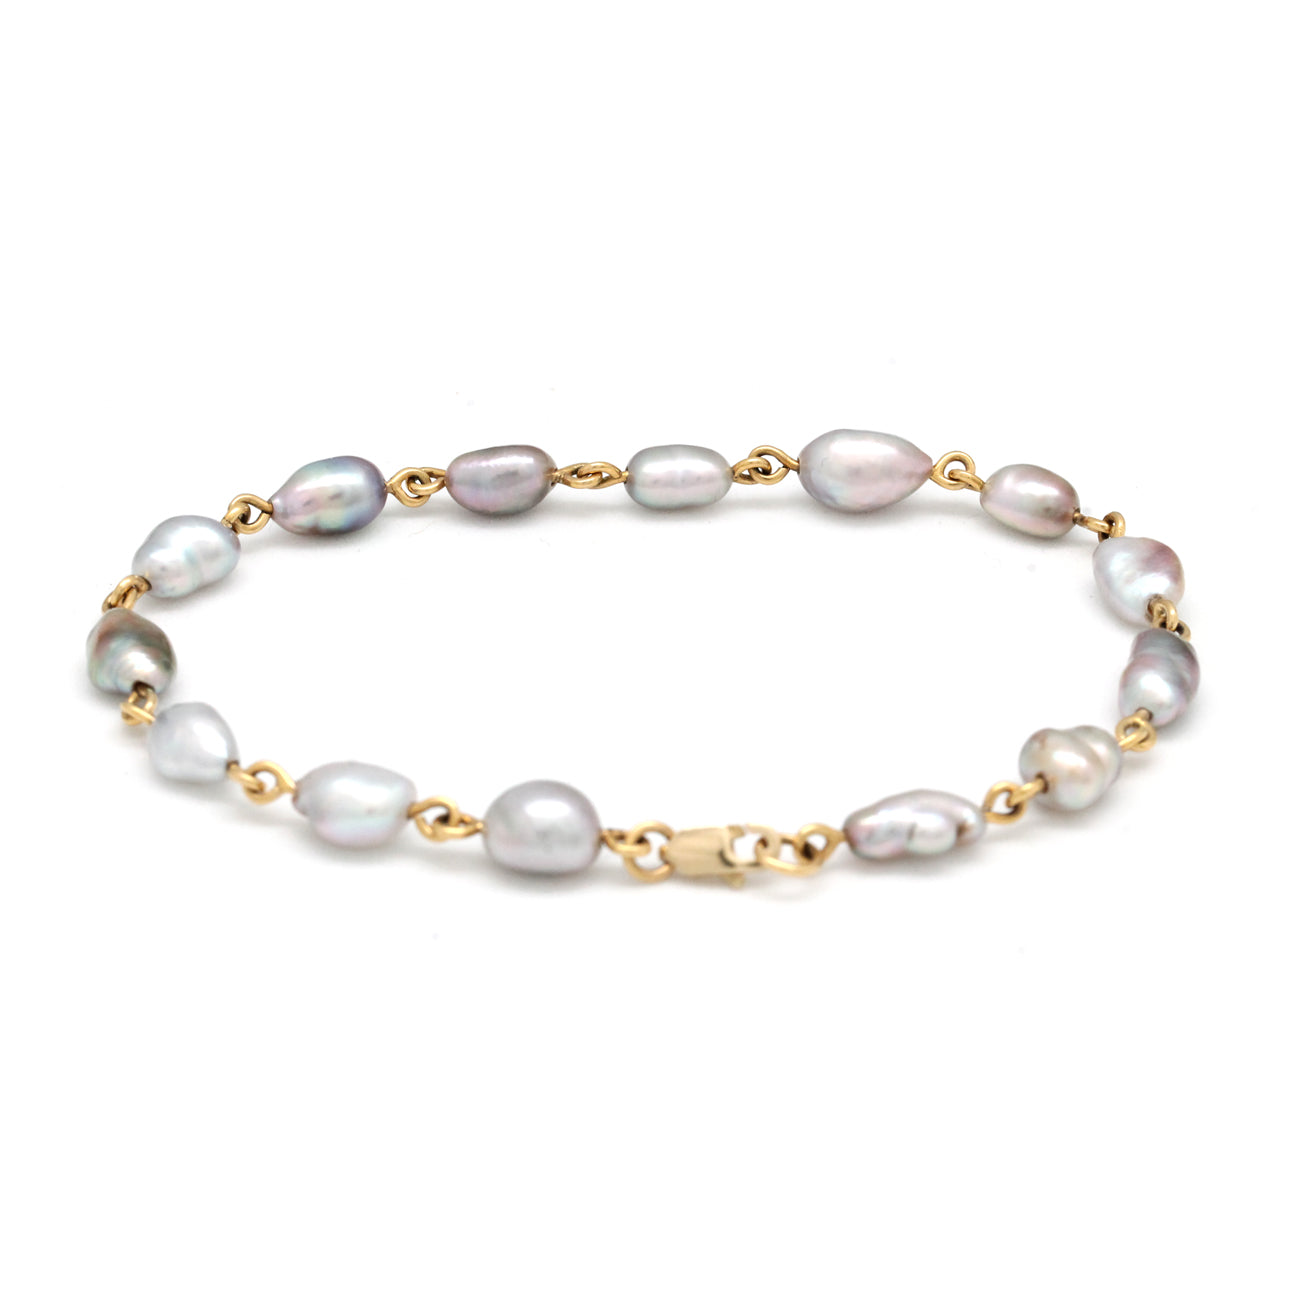 Light Iridescent Keshi Pearls on 14K Gold Bracelet